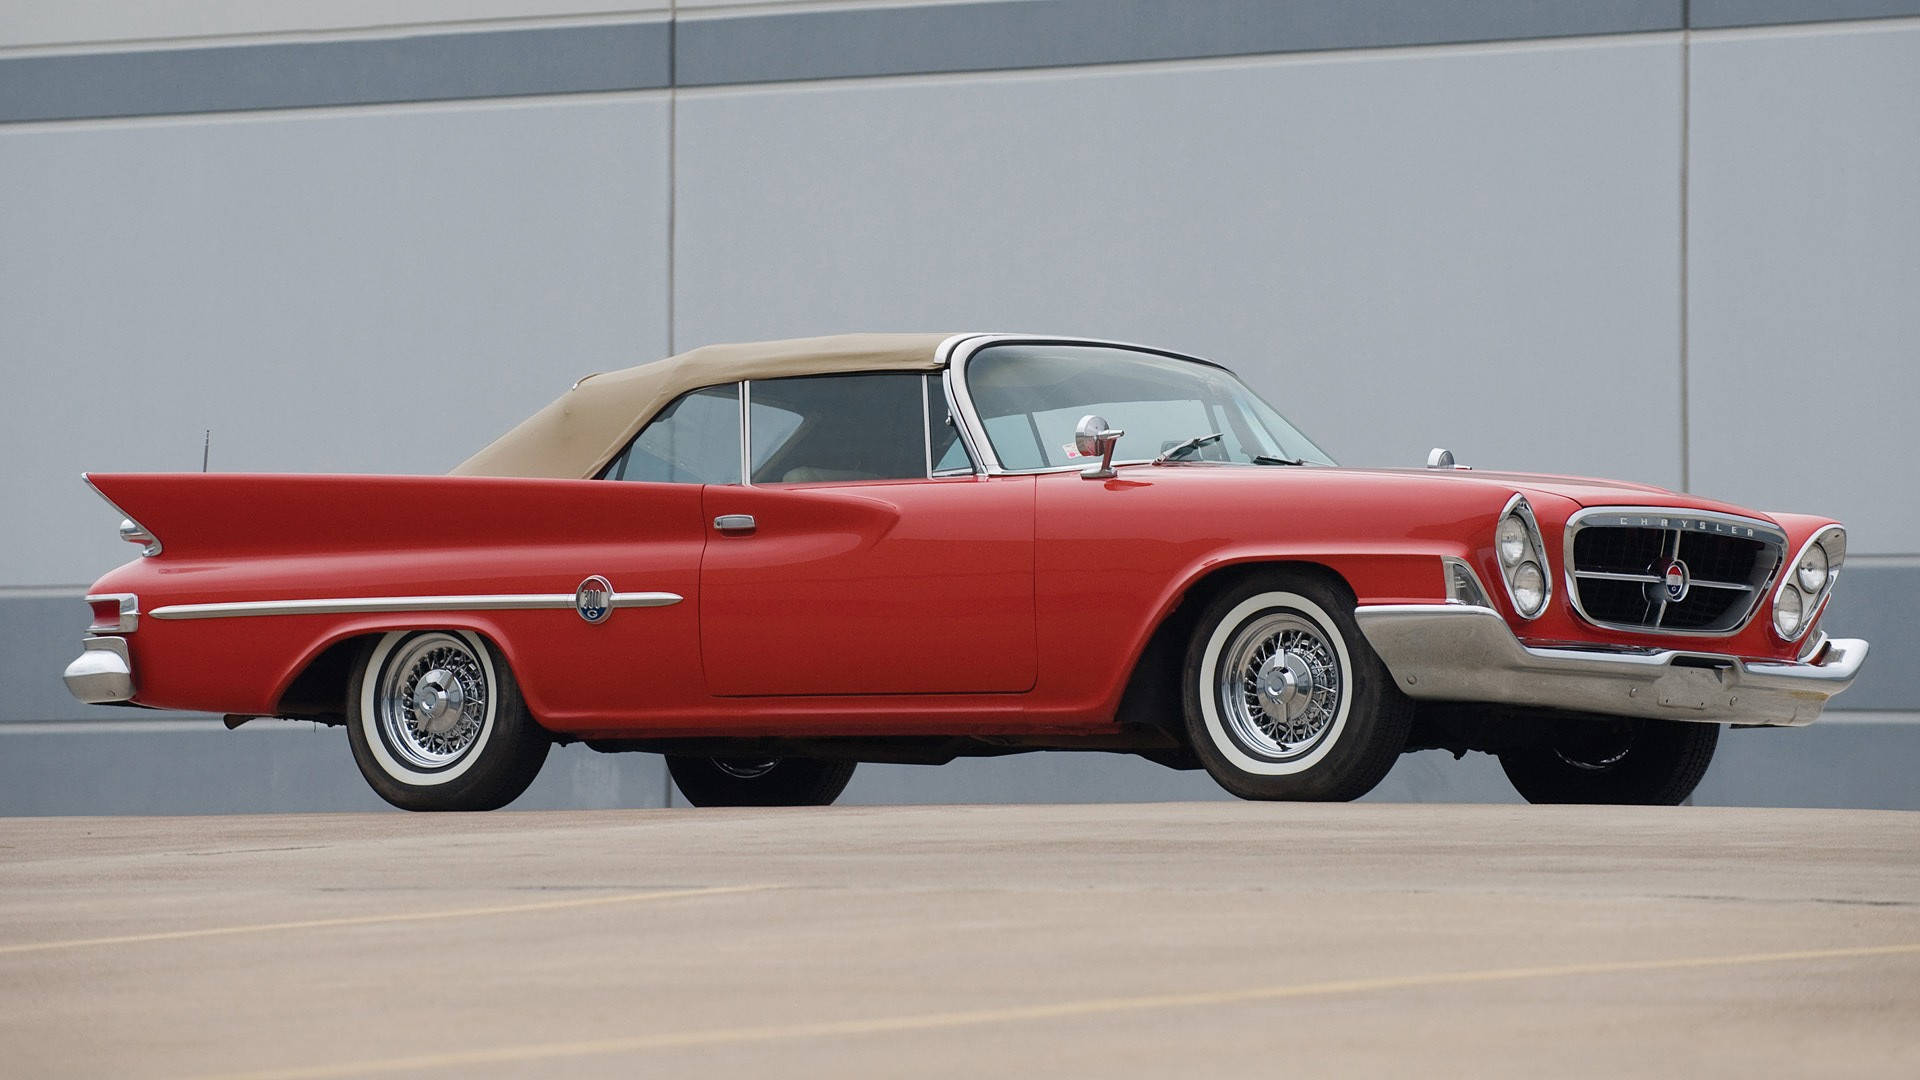 Red Chrysler Newport